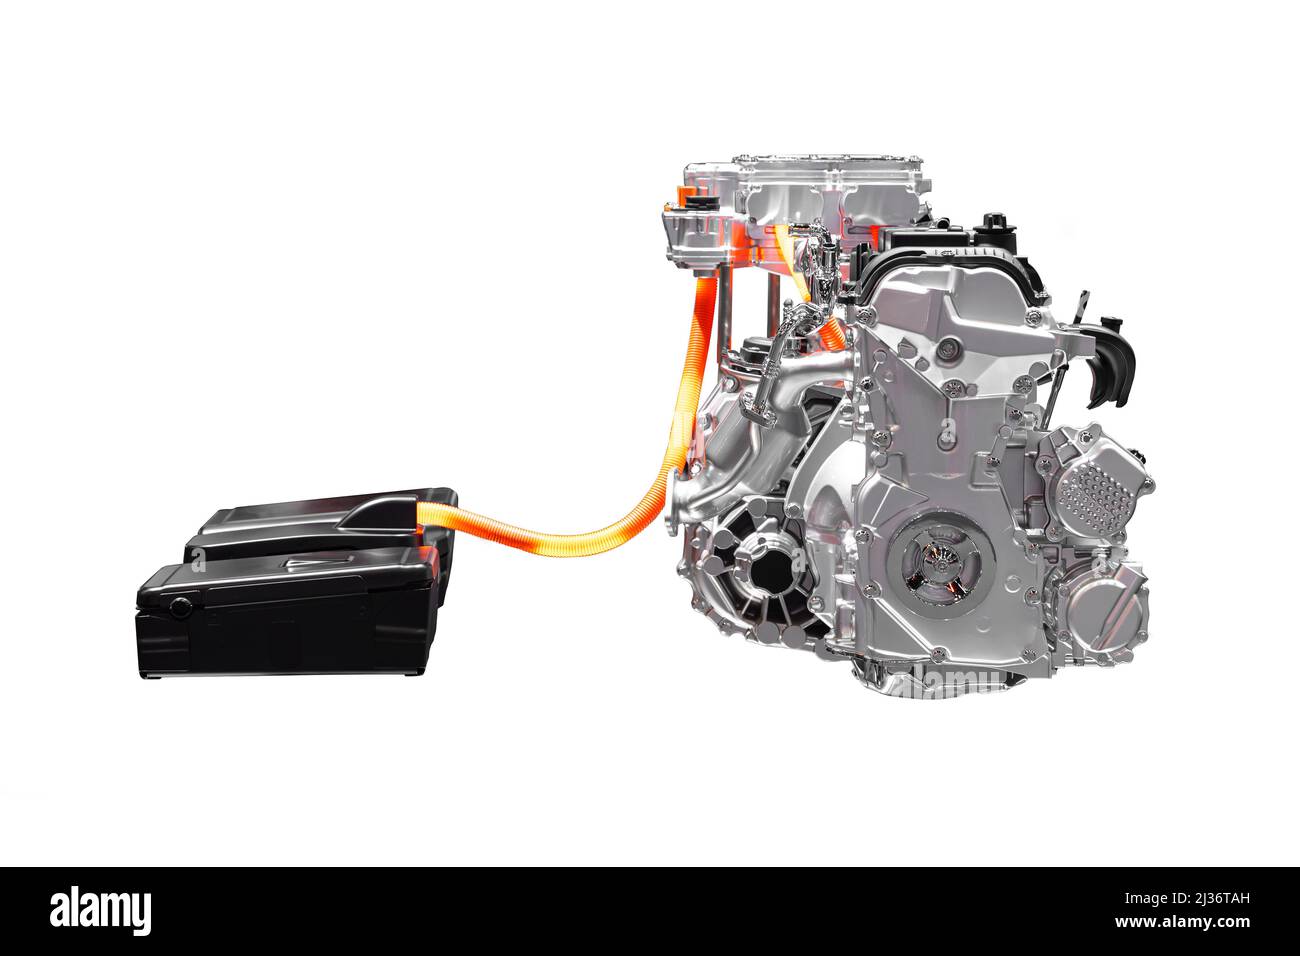 Moteur de voiture hybride EV, moteur électrique assisté système de moteur à combustion interne isolé sur fond blanc. Banque D'Images